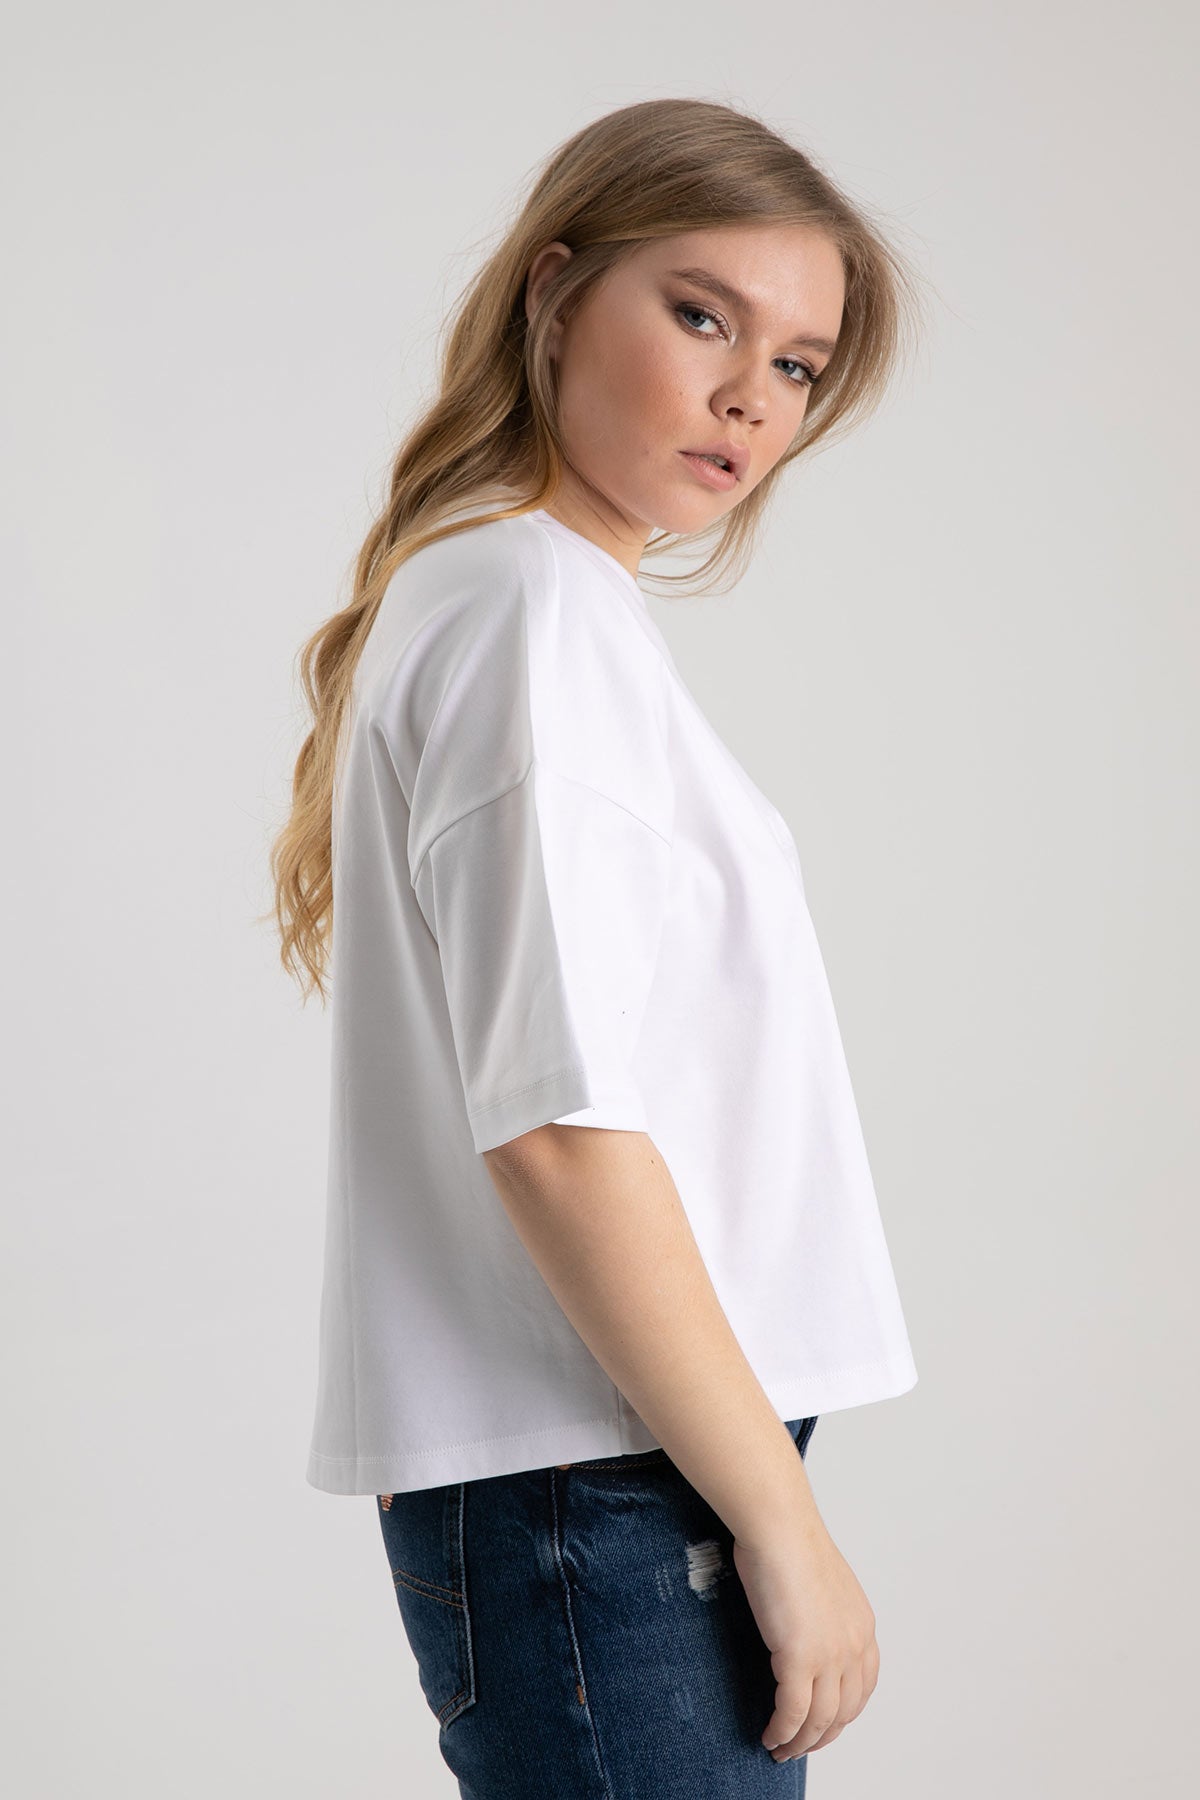 Emporio Armani Düşük Omuzlu Geniş Kesim Logo T-shirt-Libas Trendy Fashion Store